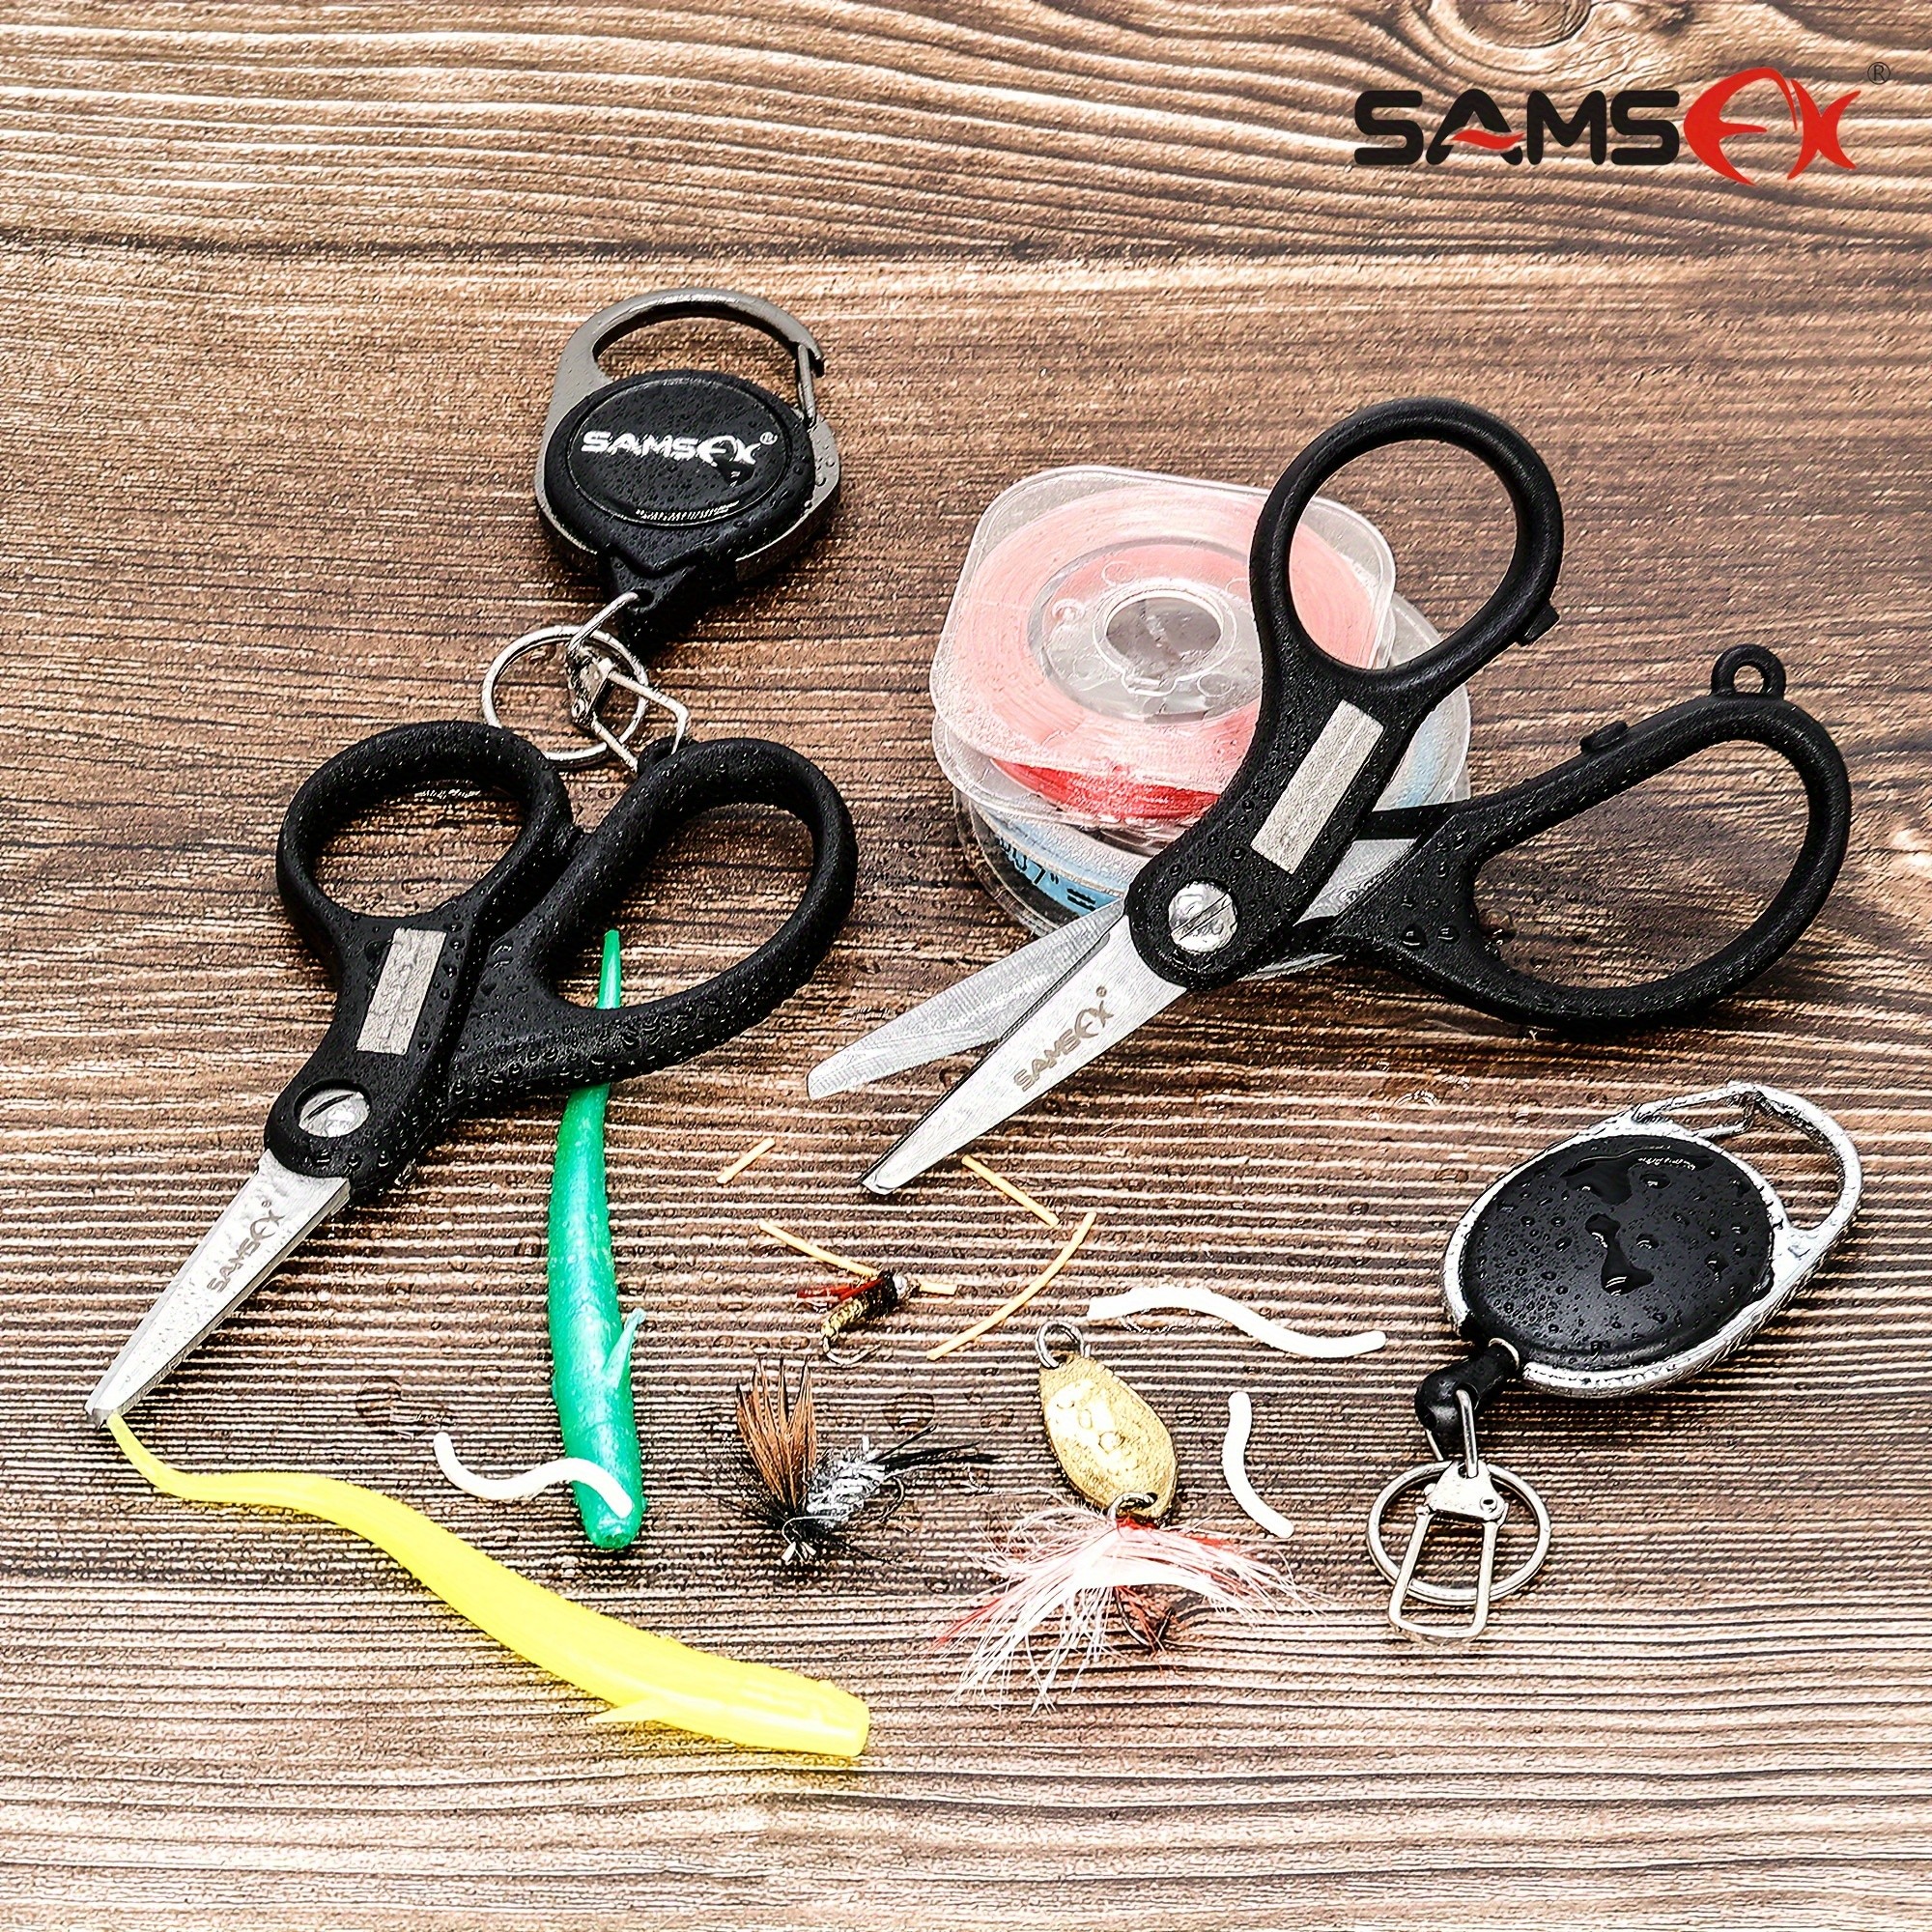 SAMSFX - Gears Brands